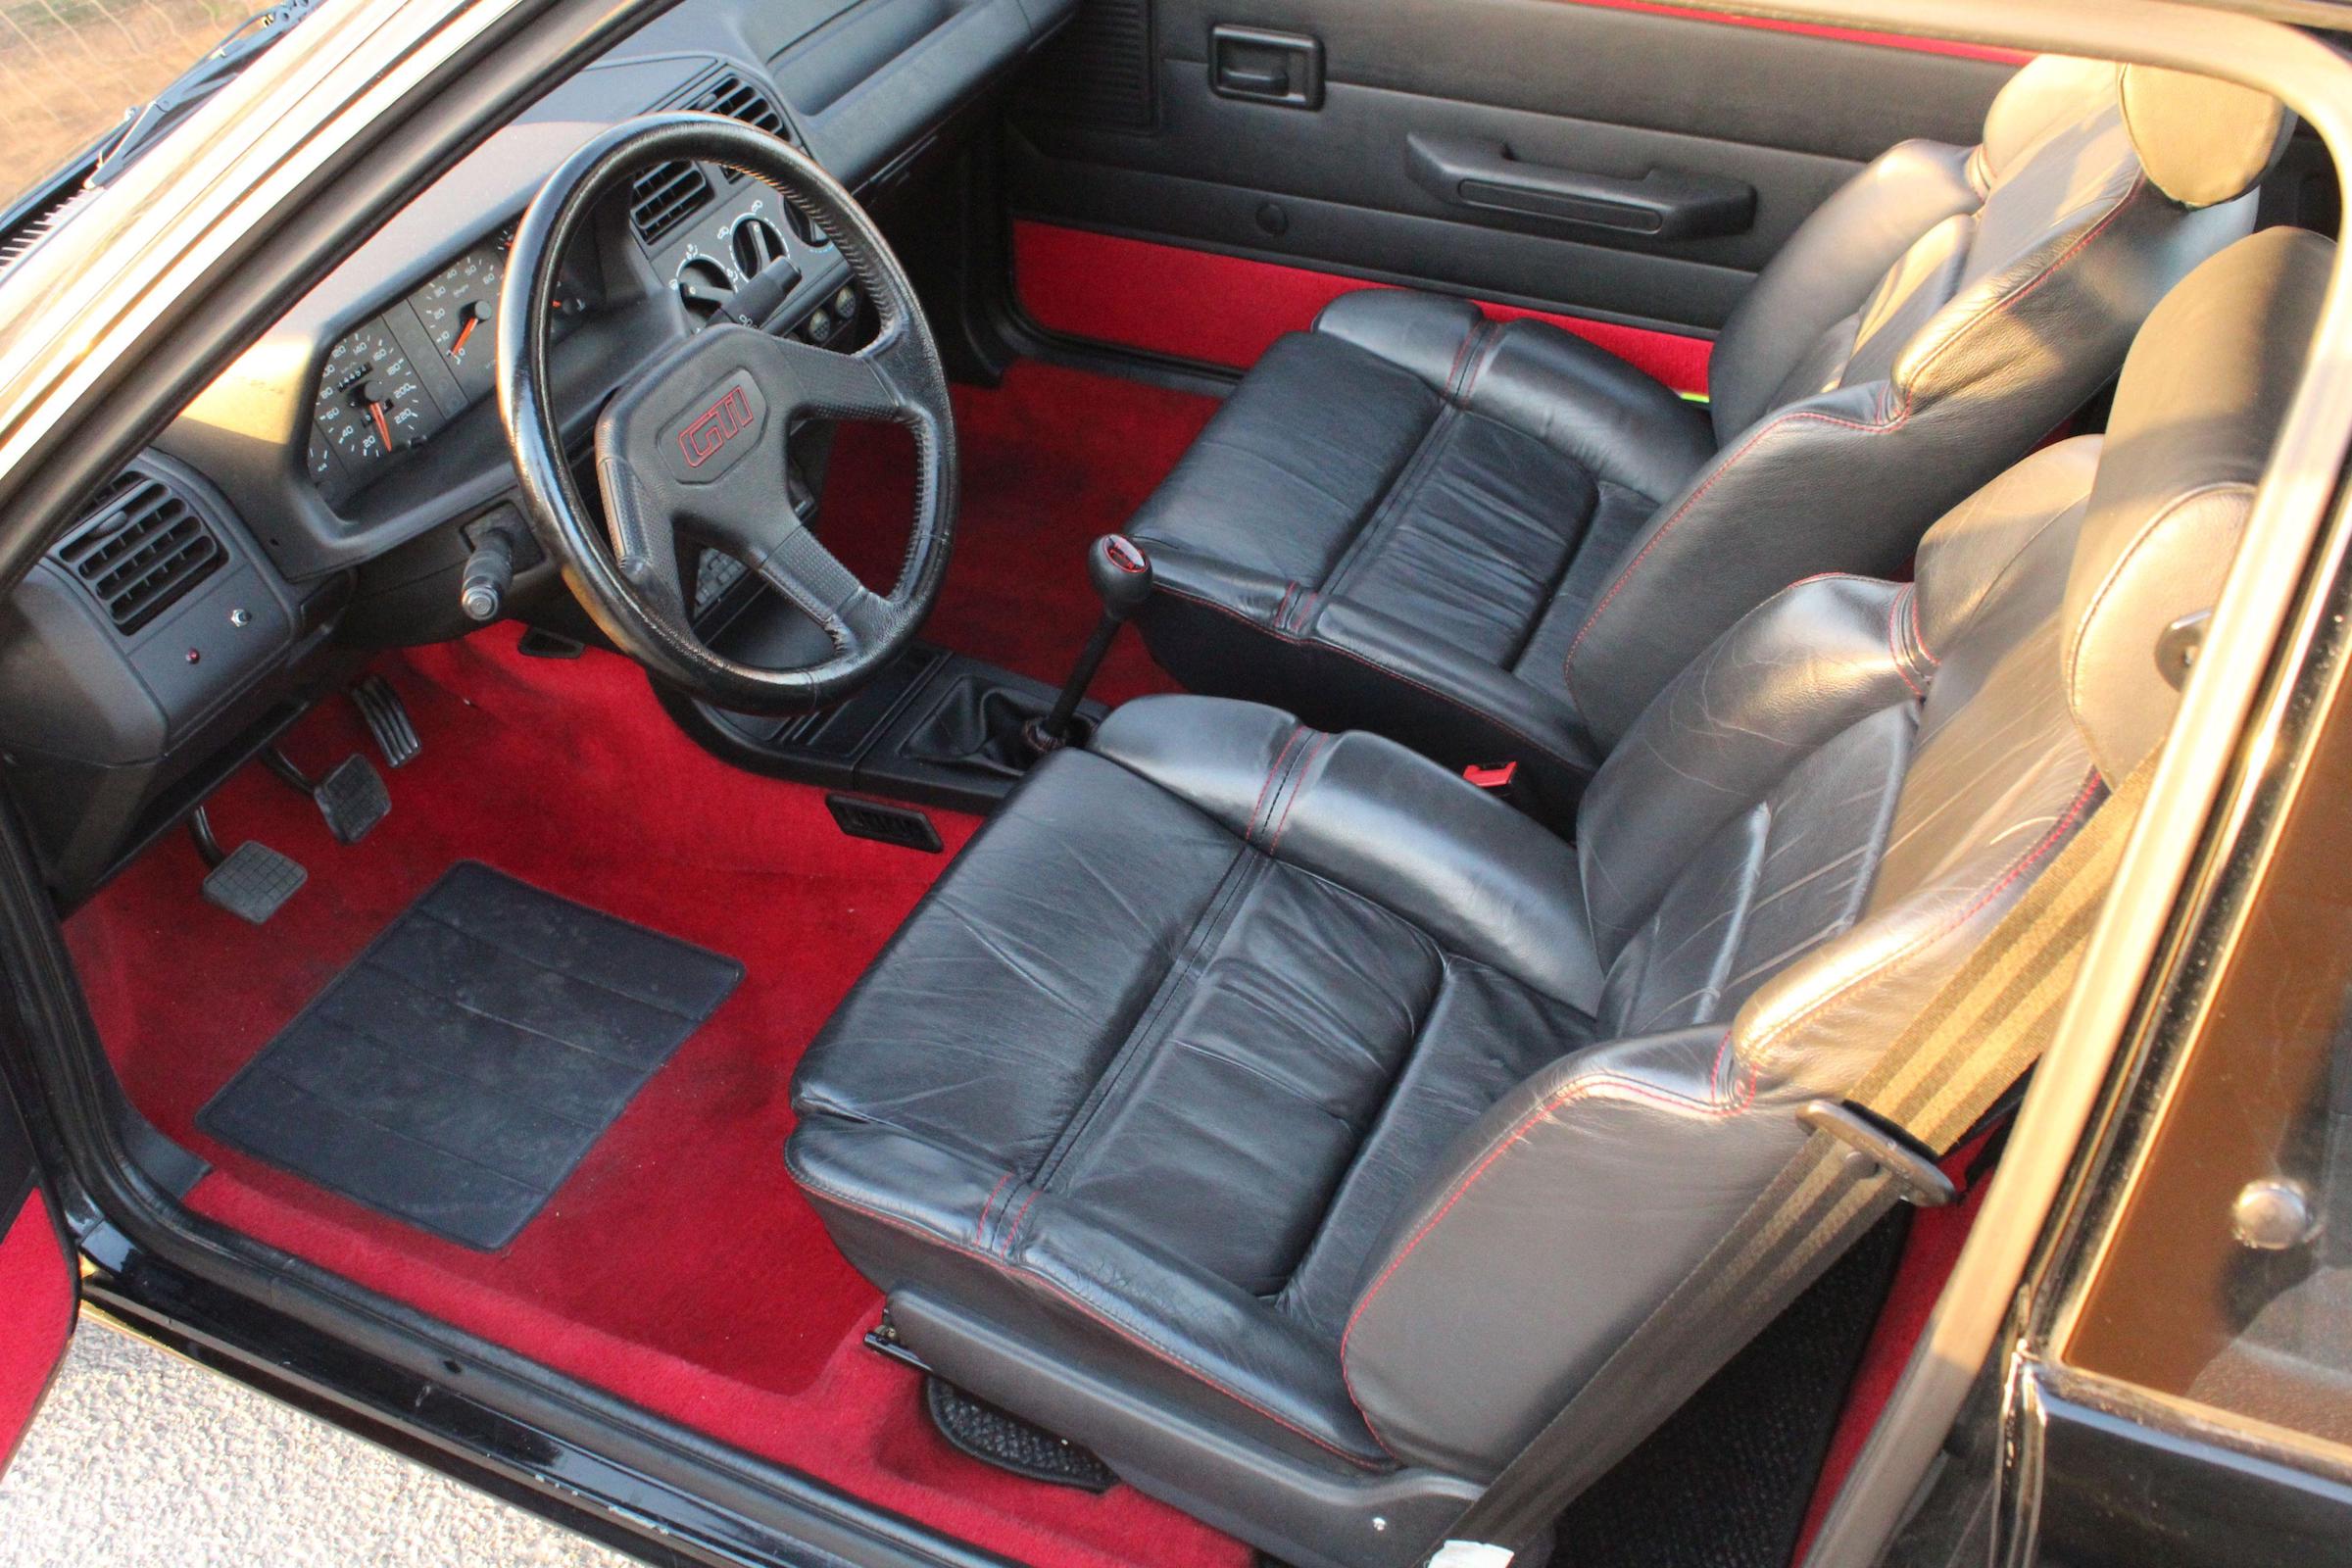 Artcurial Peugeot 205 GTI 1.9 interior